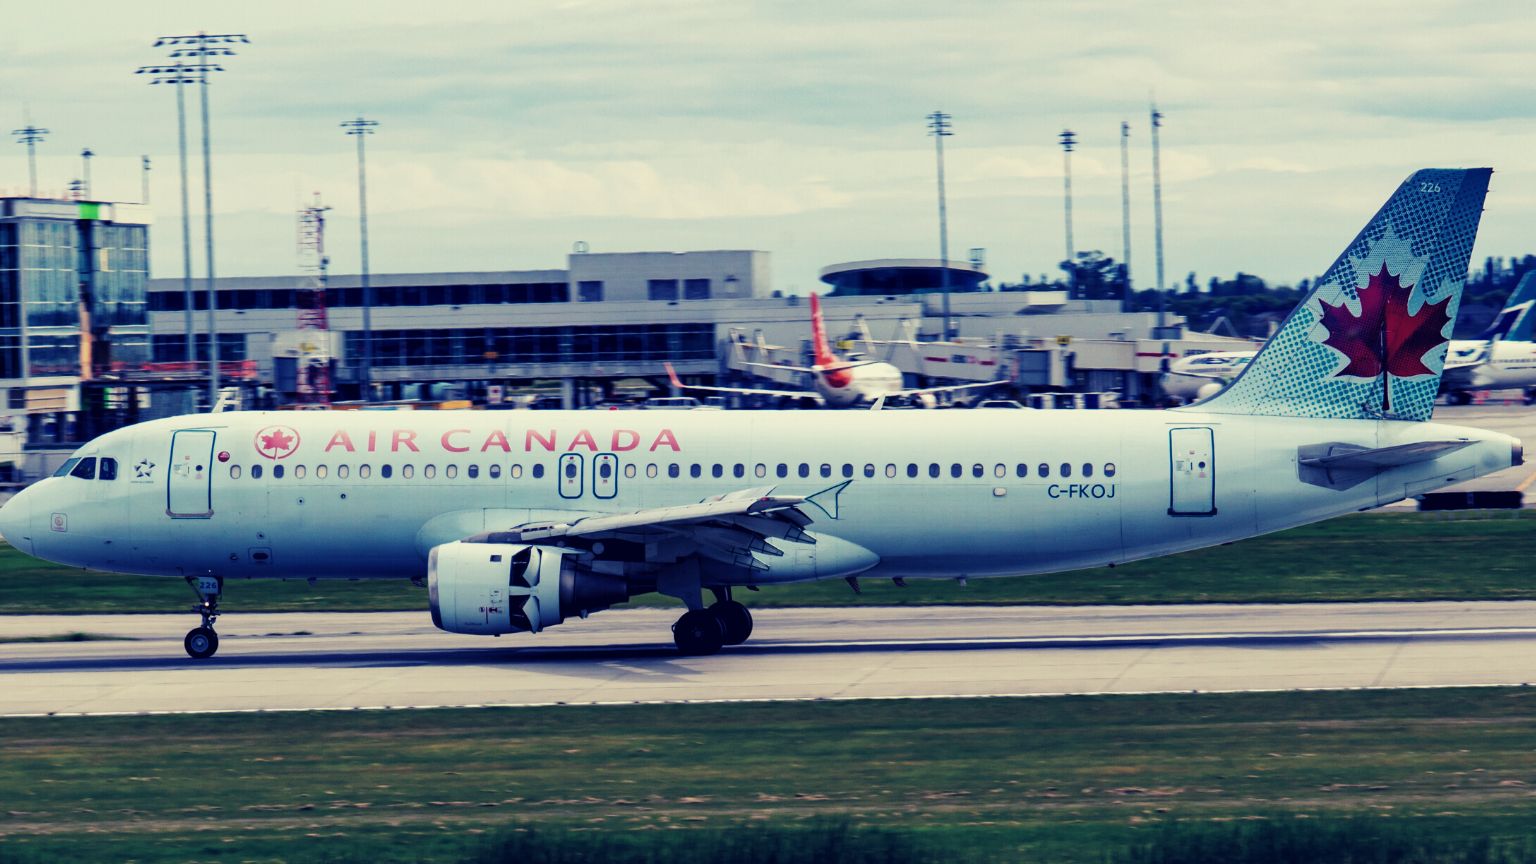 Kanadas erste Fluggesellschaft führt Technologie zur digitalen Identifizierung und Gesichtserkennung ein